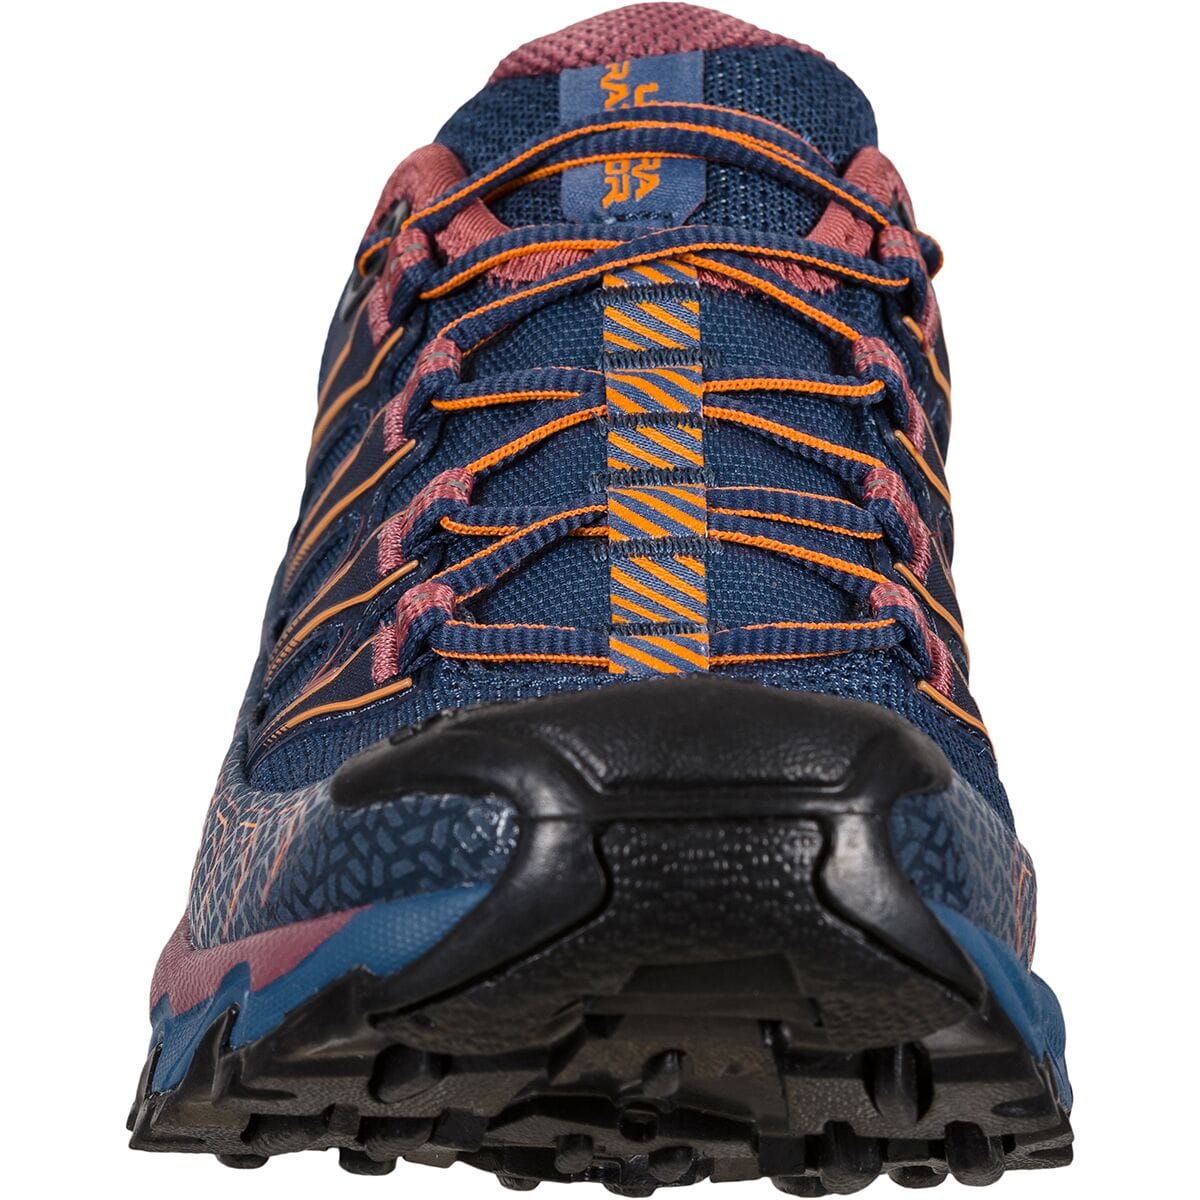 Ultra Raptor II Trail Running Shoe - Women's Footwear